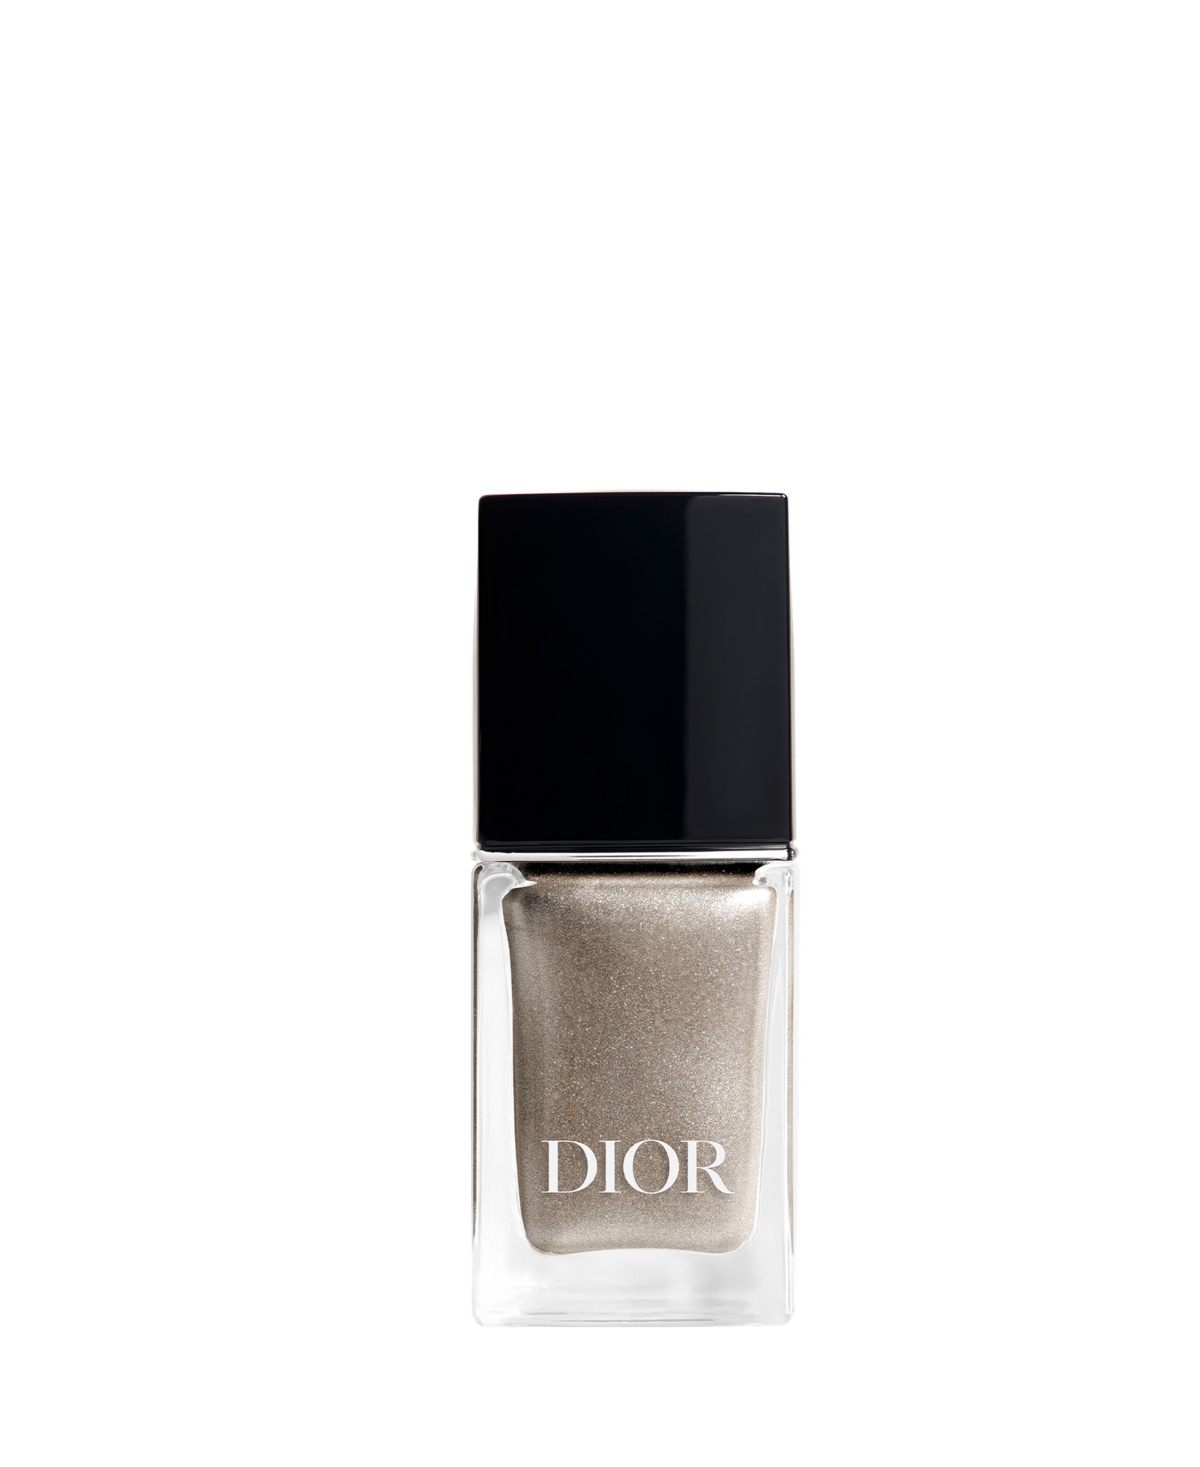 Limited-Edition Holiday Dior Vernis Nail Polish